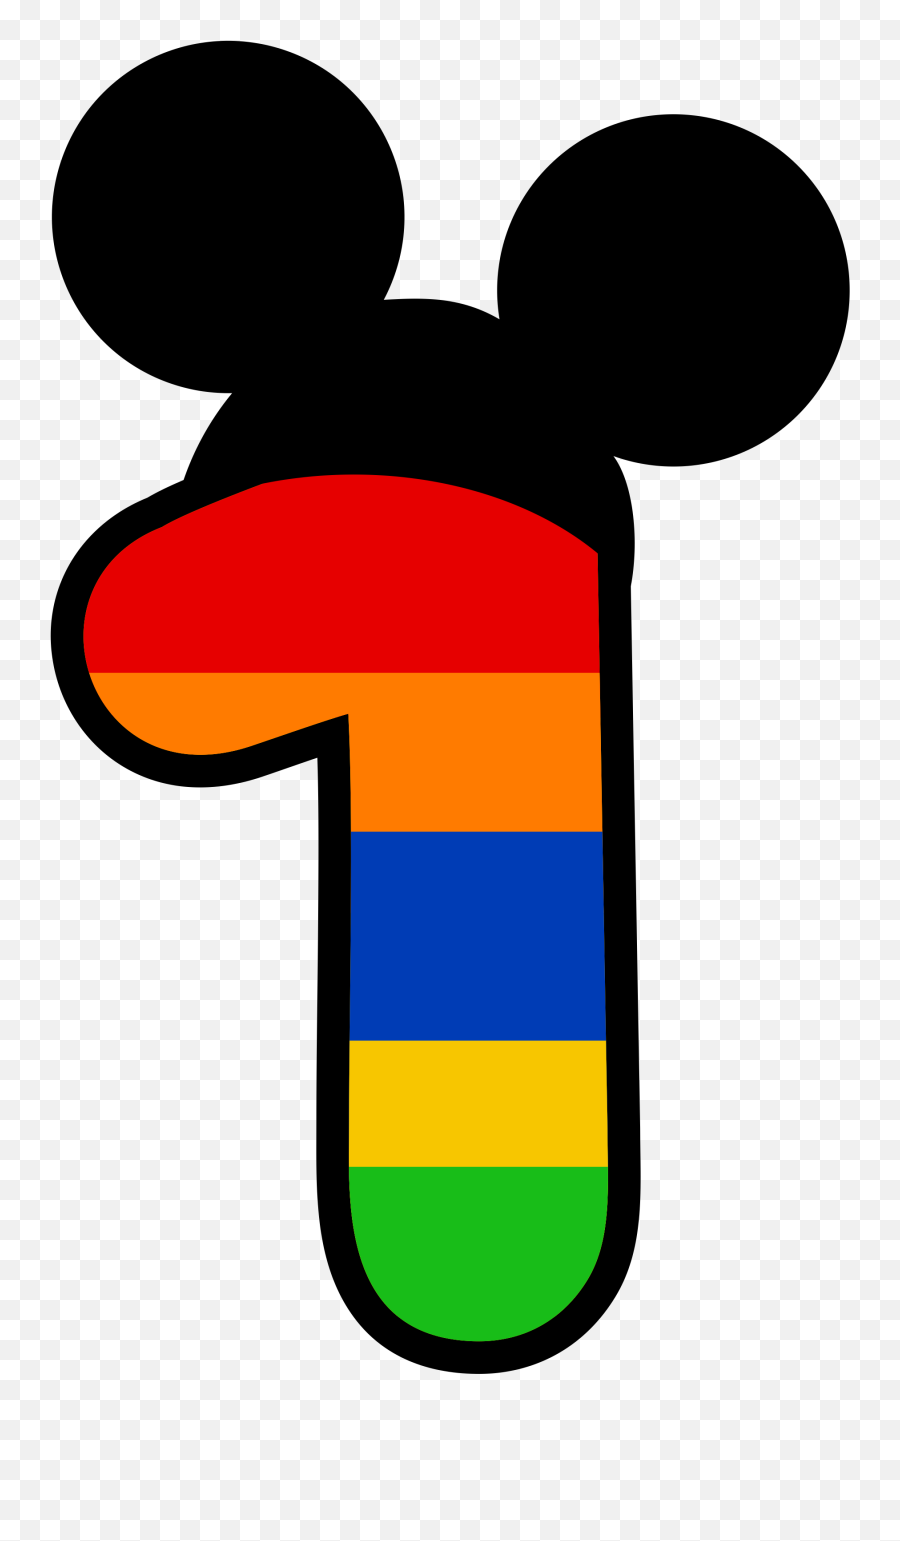 Clipart Numbers Mickey Mouse - Letras Y Numeros Animados Numeros De Colores 1 Emoji,Mickey Mouse Ears Clipart